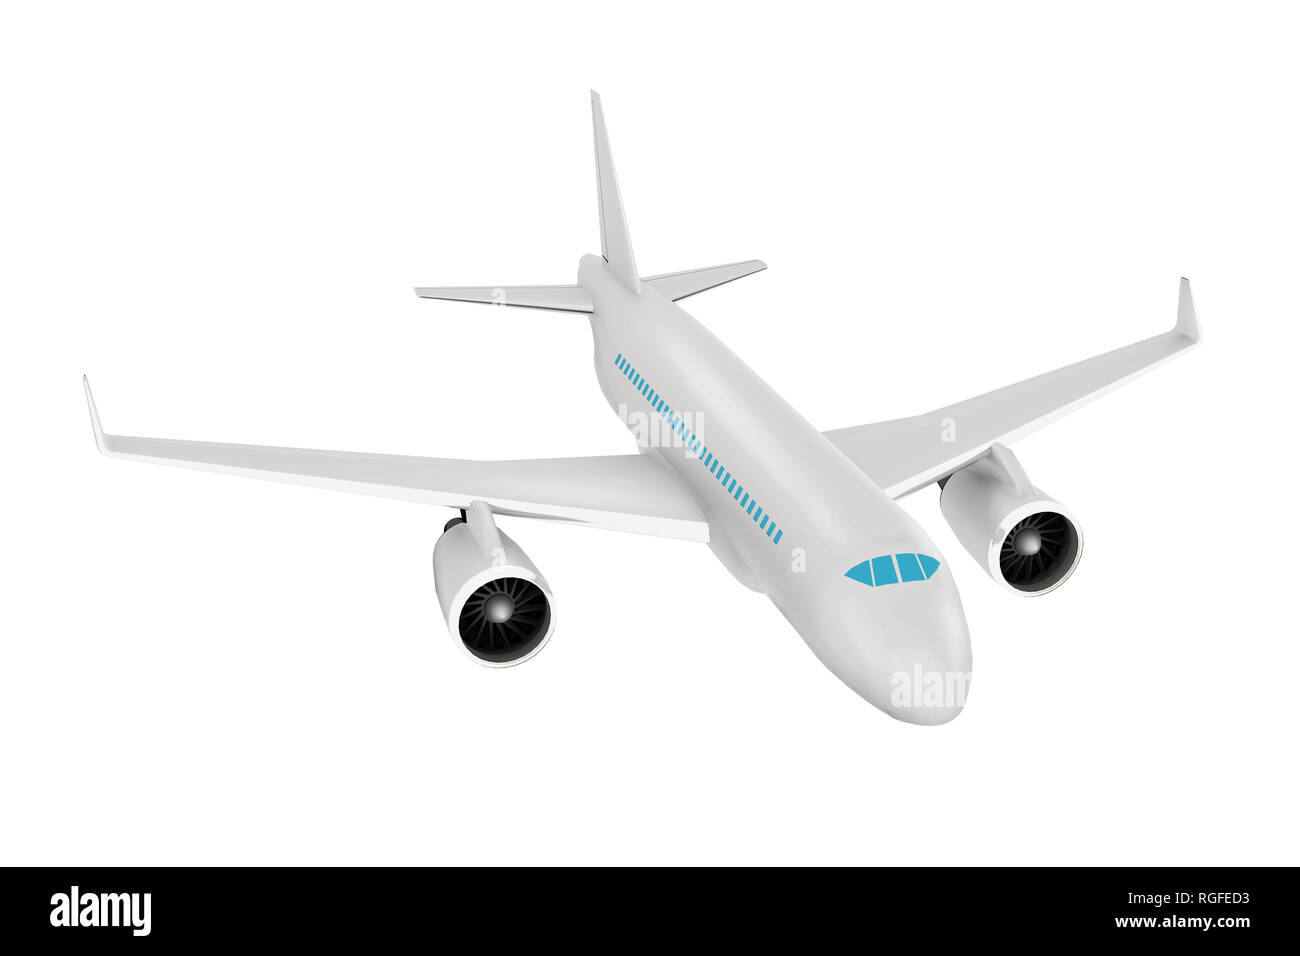 Avion de transport de passagers. Modèle de rendu 3D réaliste, isolés high angle view Banque D'Images